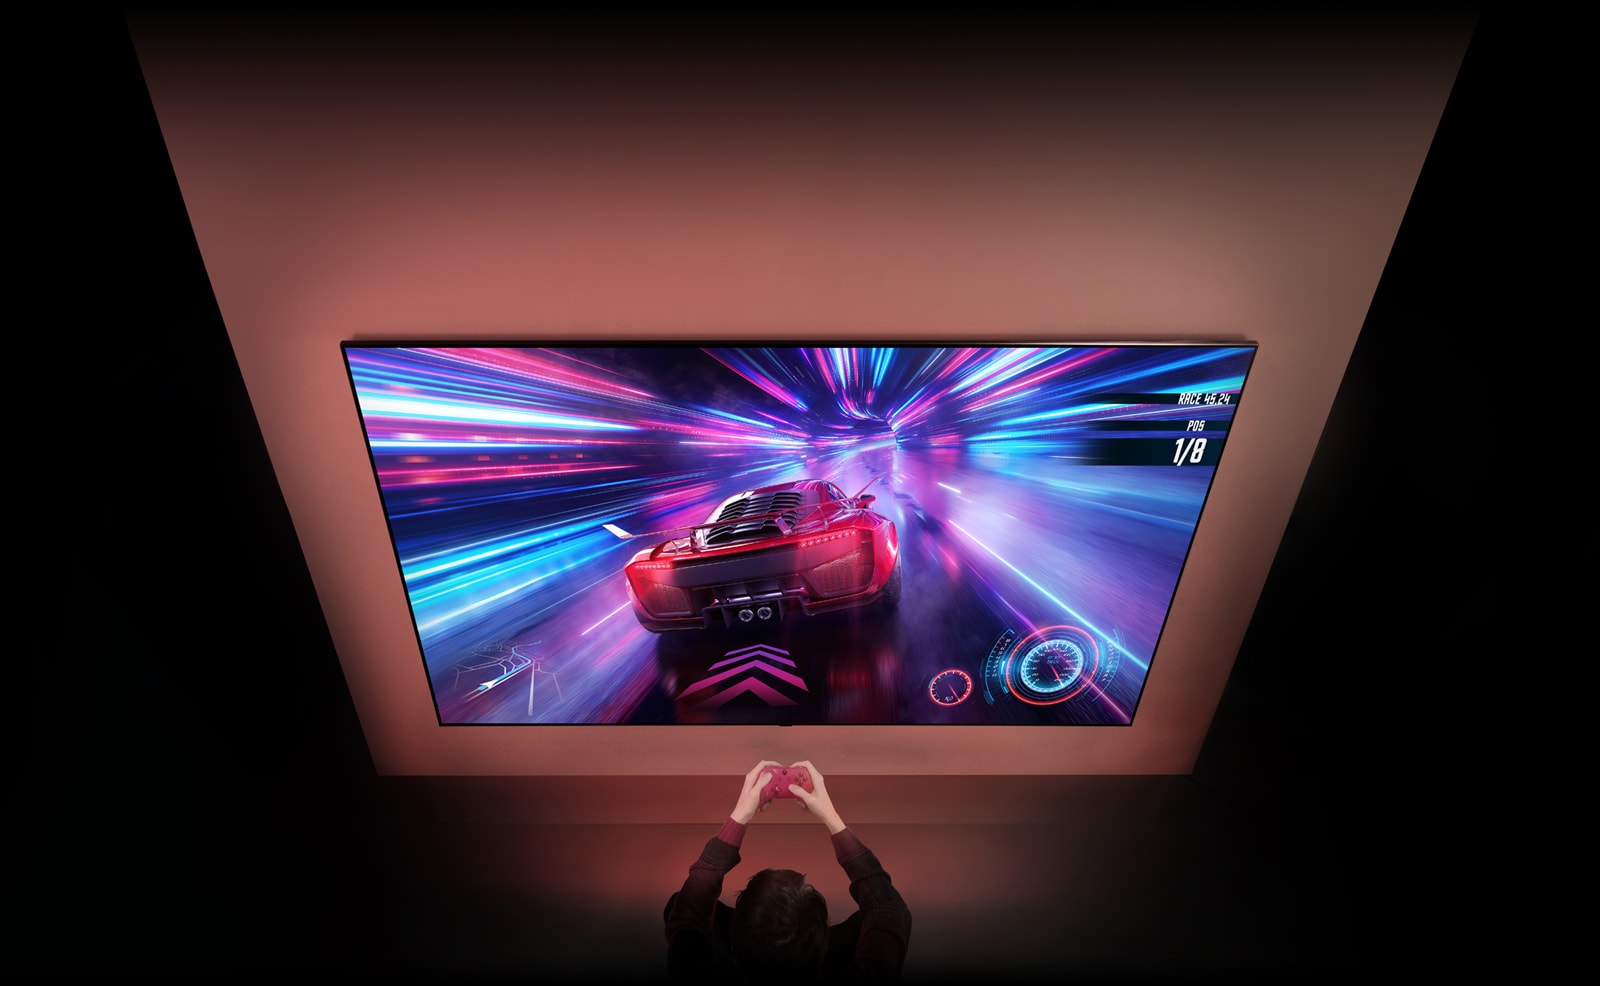 Ant sienos kabo didelis televizorius, kurio ekrane matomas lenktynių žaidimo vaizdas. Priešais televizorių matyti į žaidimą susitelkusio asmens rankos ir valdikliai.